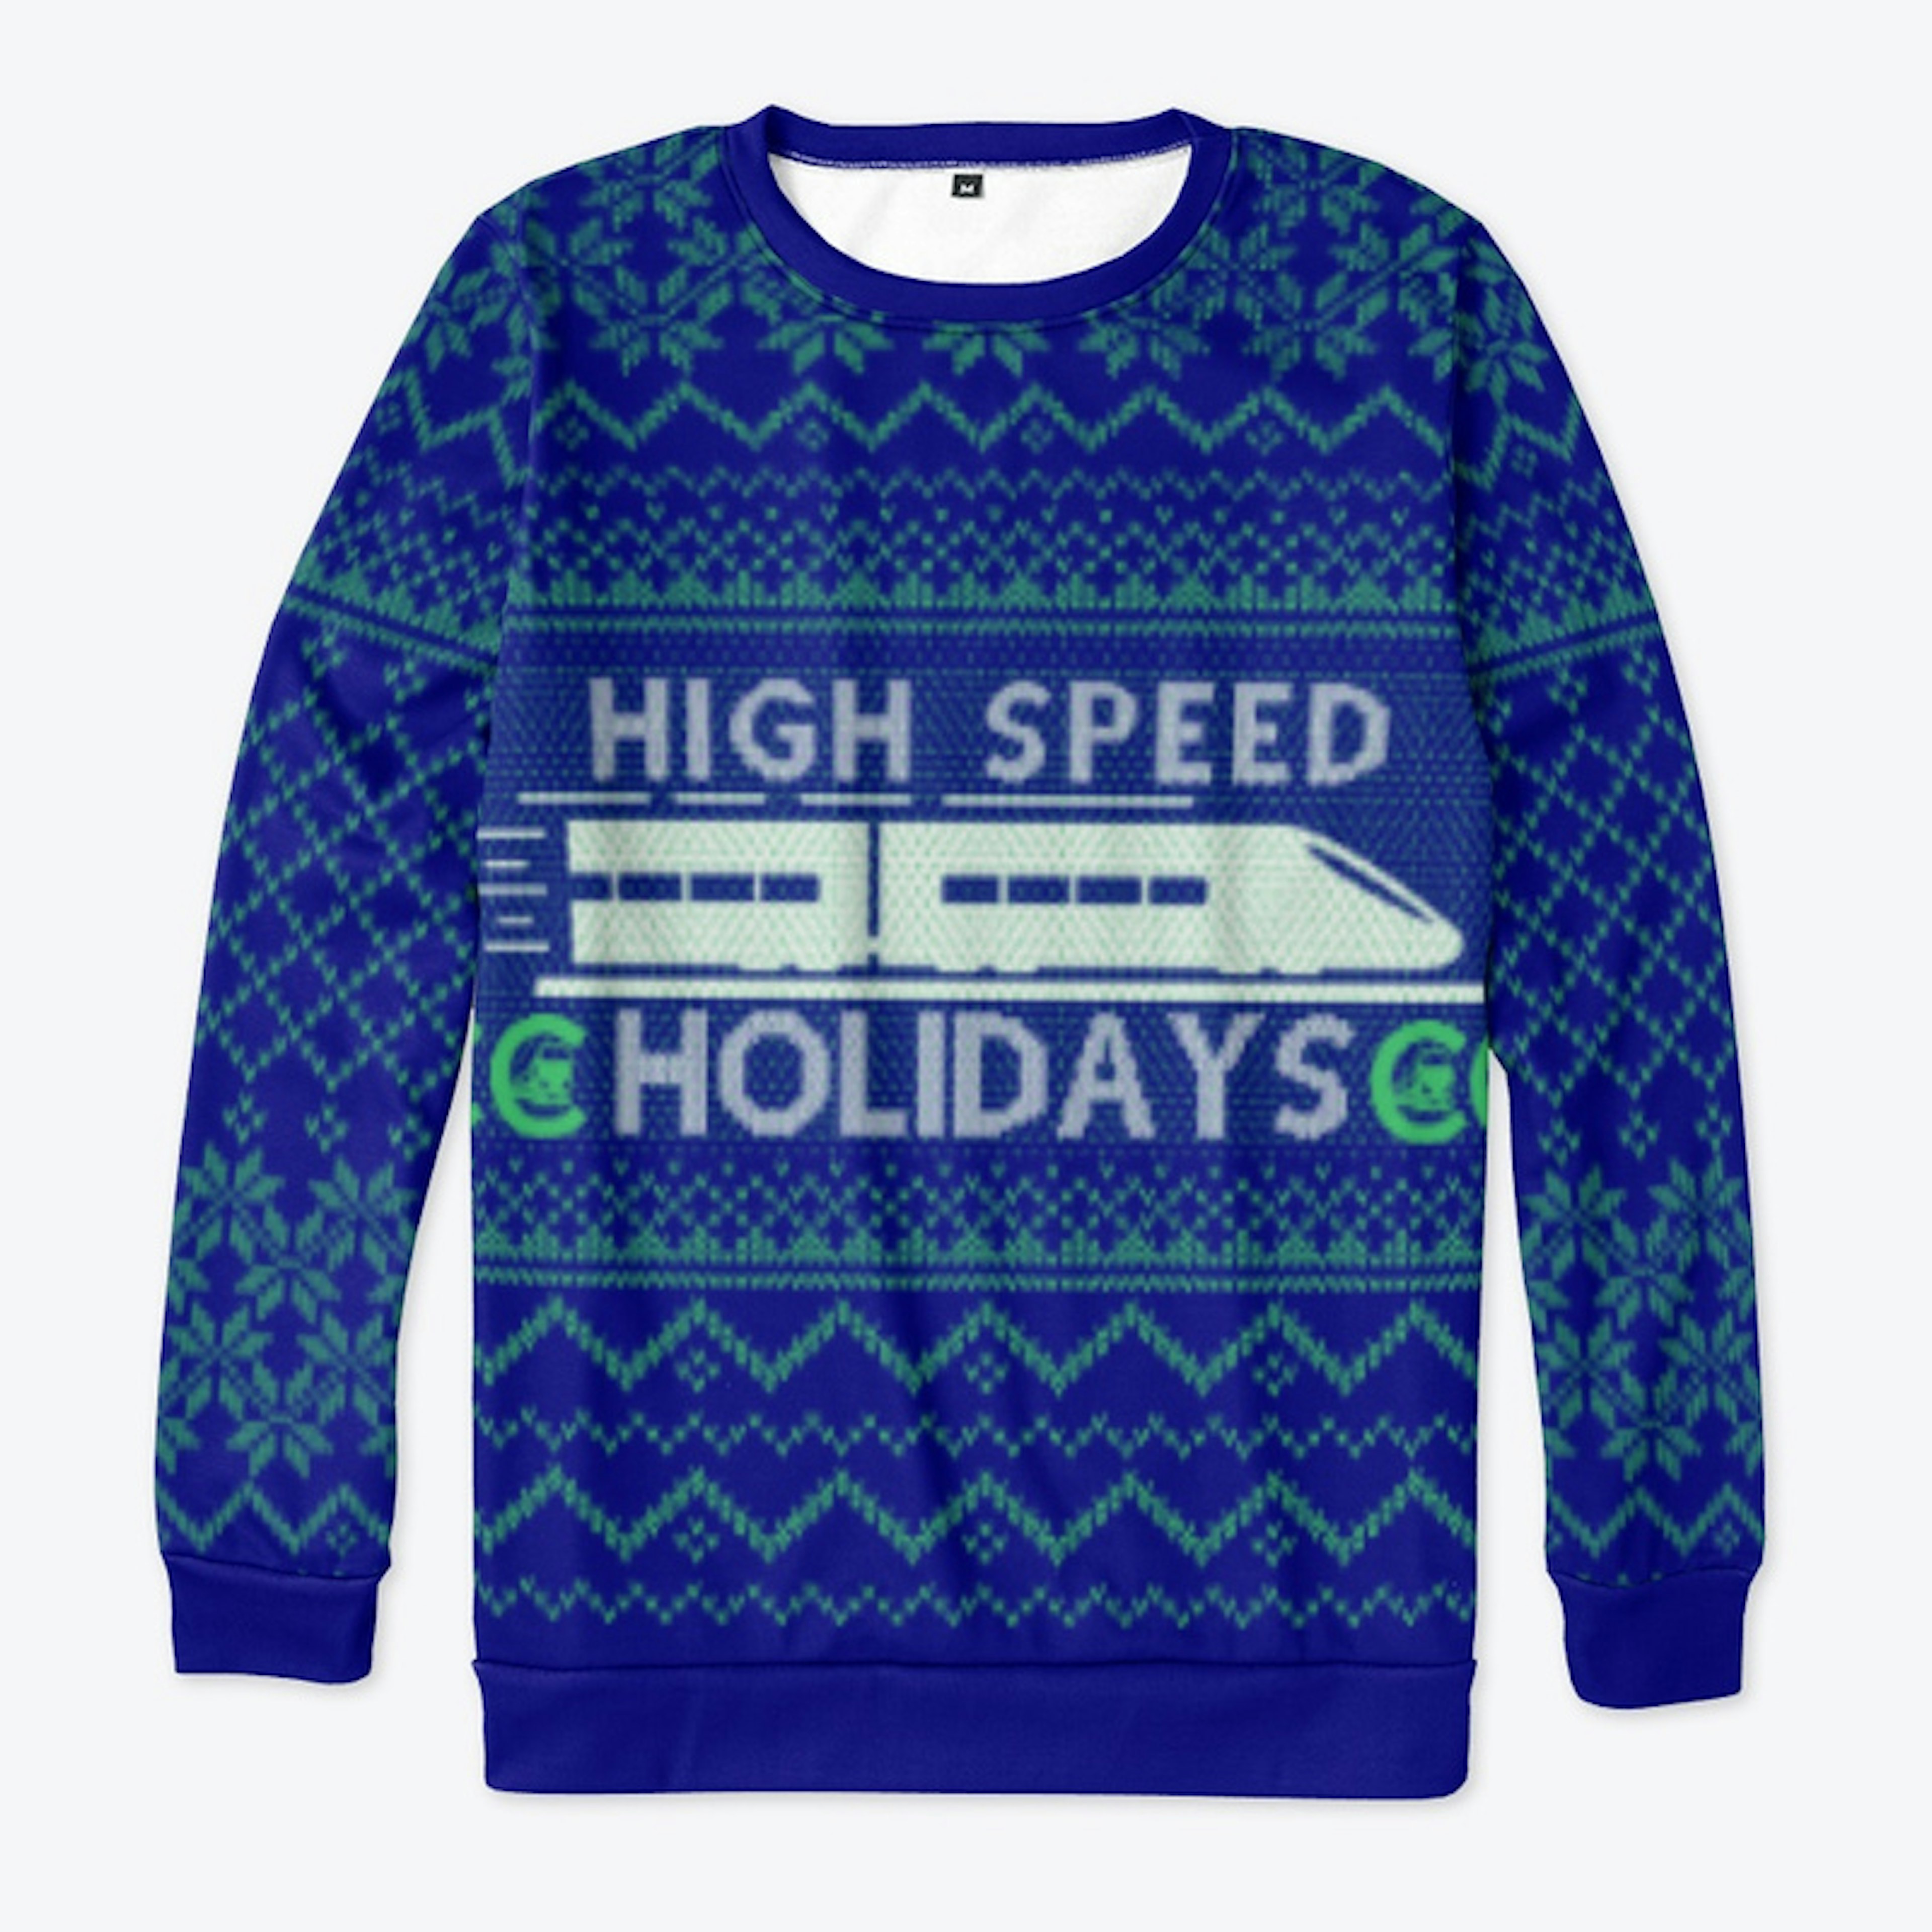 High Speed Holidays